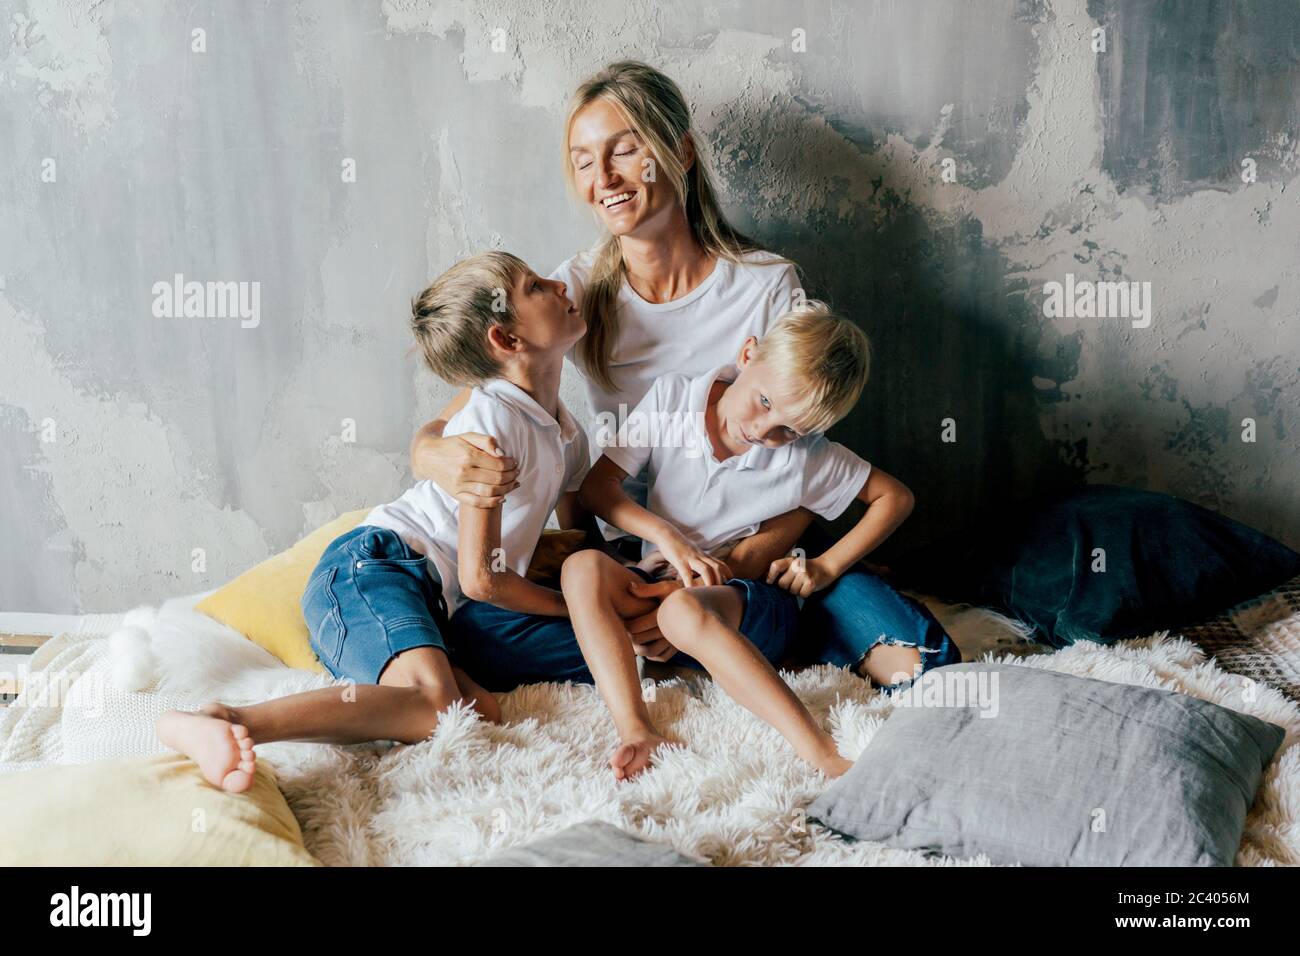 Schöne weiße junge Mutter umarmt ihre Söhne im Bett. Zeit mit der Familie. Lifestyle-Porträt. Stockfoto